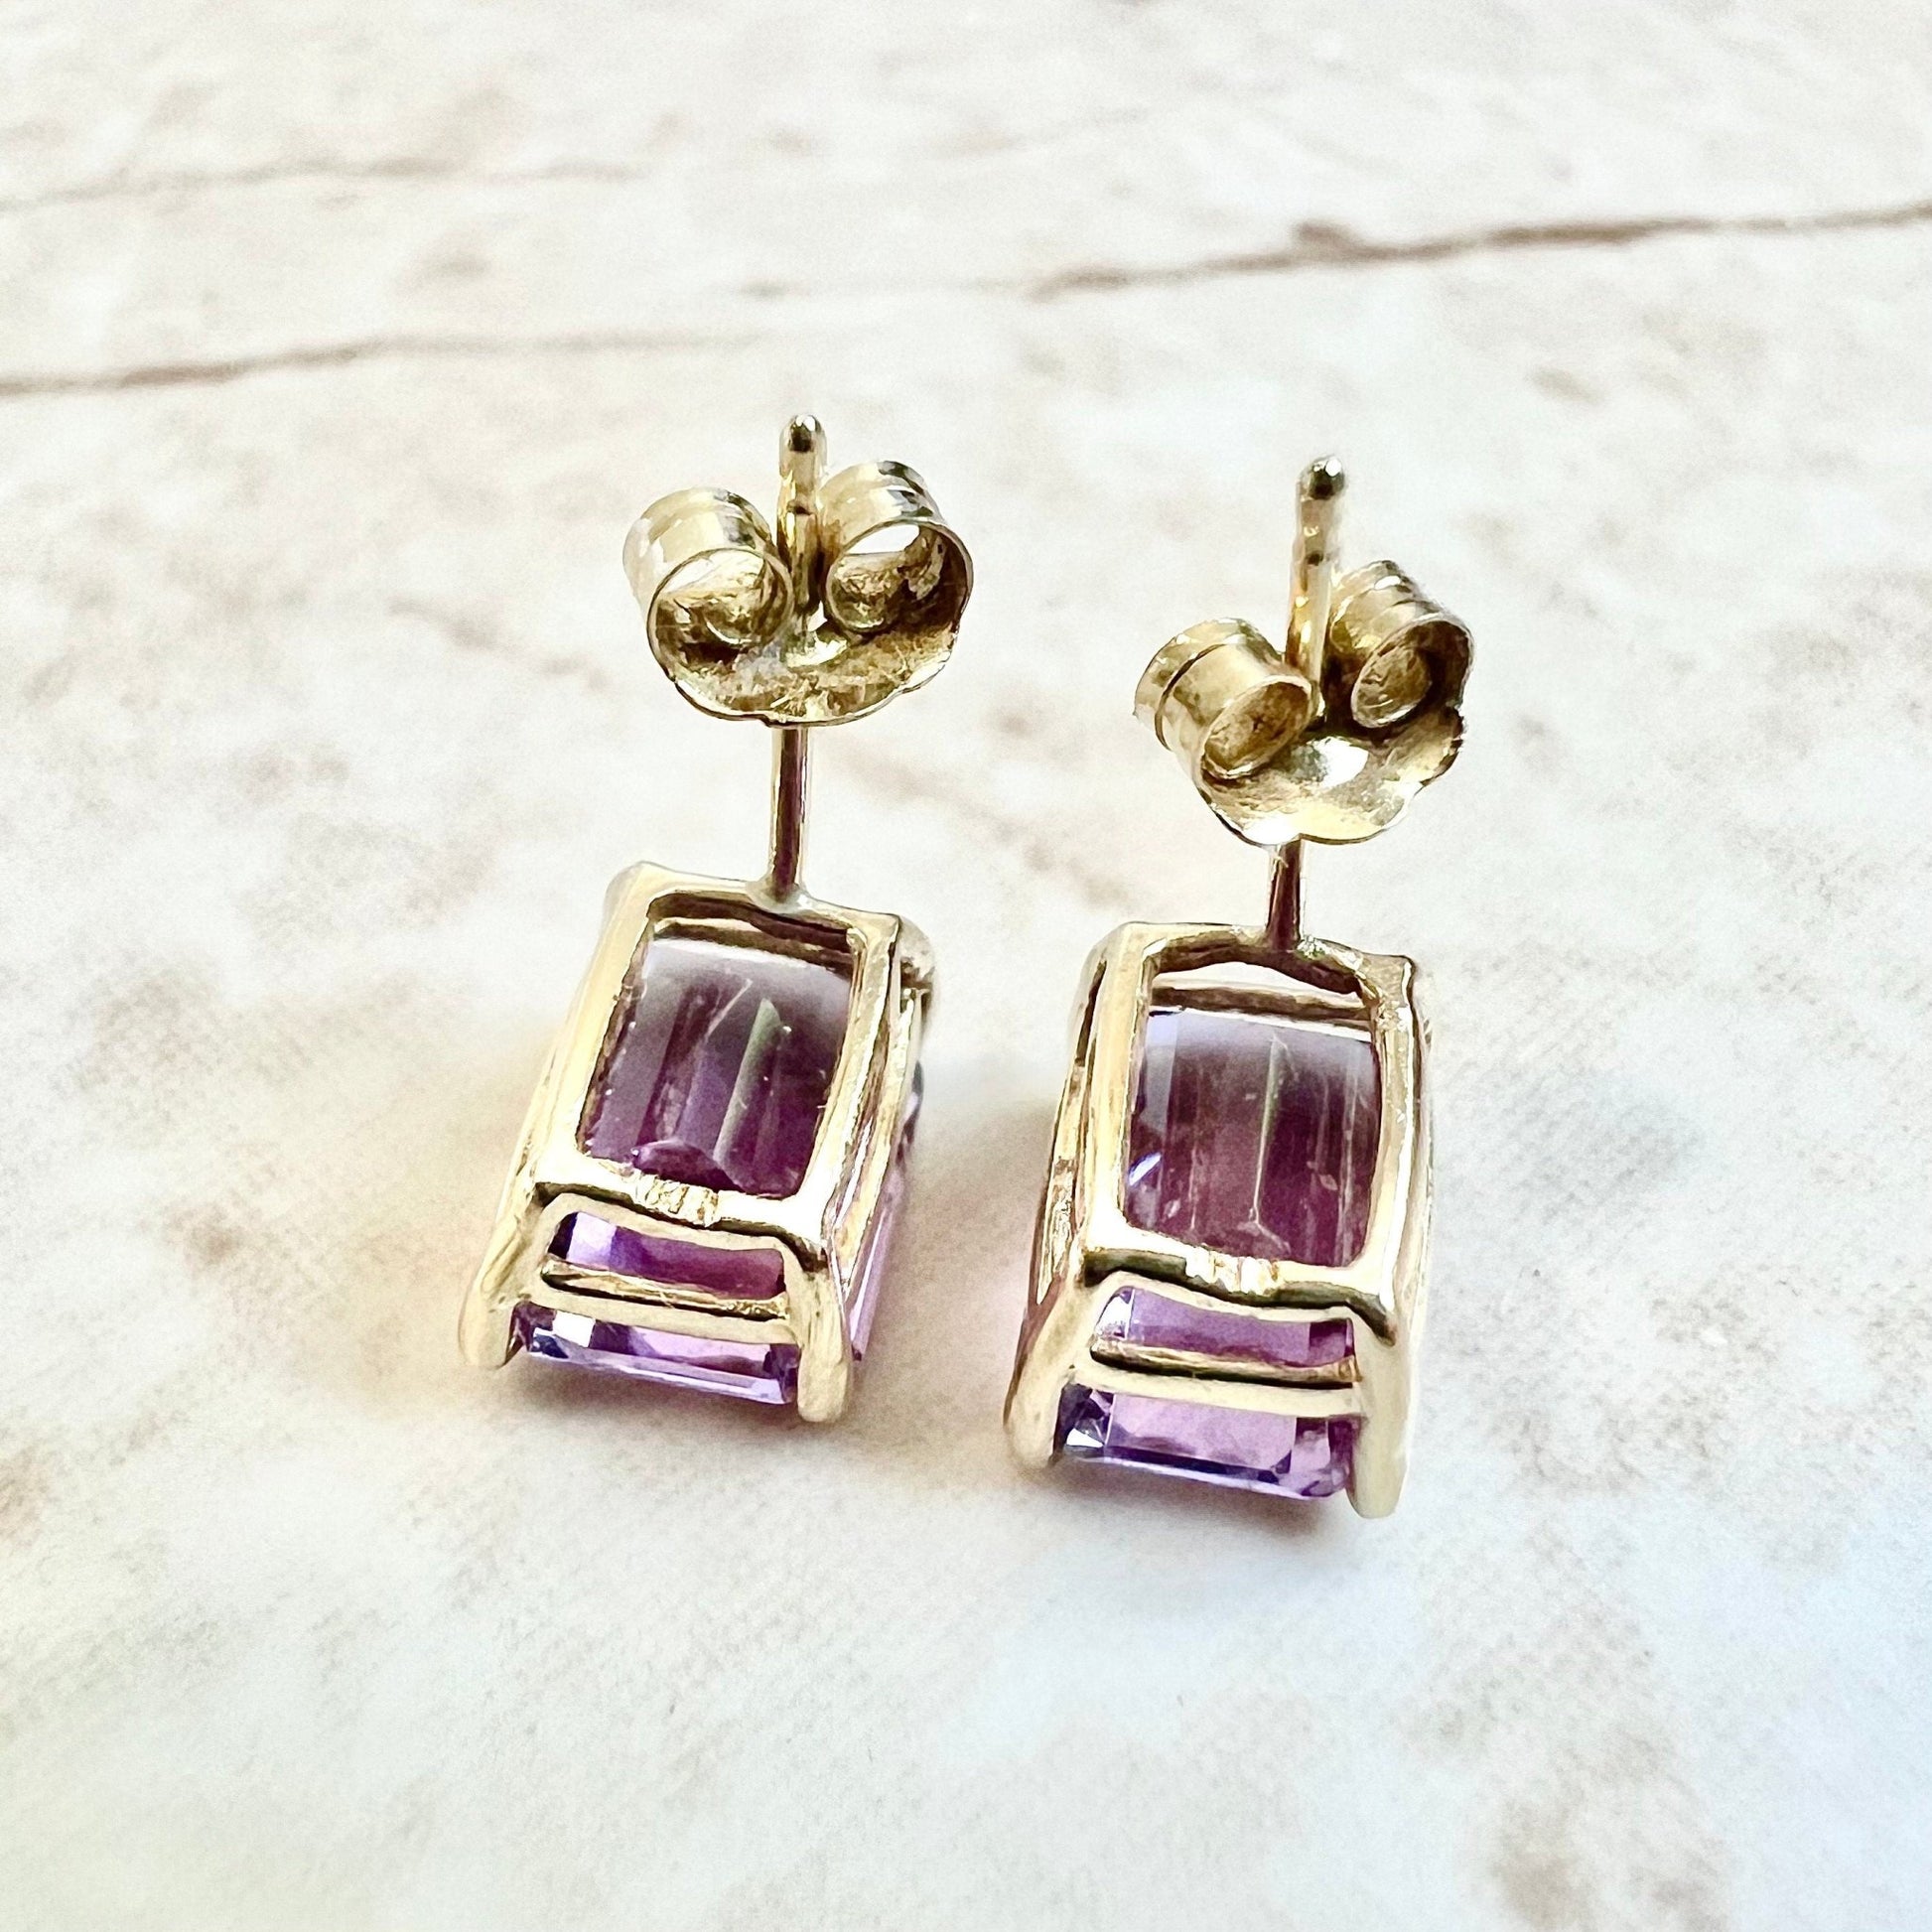 14K Emerald Cut Amethyst Stud Earrings - 14K Yellow Gold Amethyst Earrings - Amethyst Studs - February Birthstone Earrings - Gifts For Her